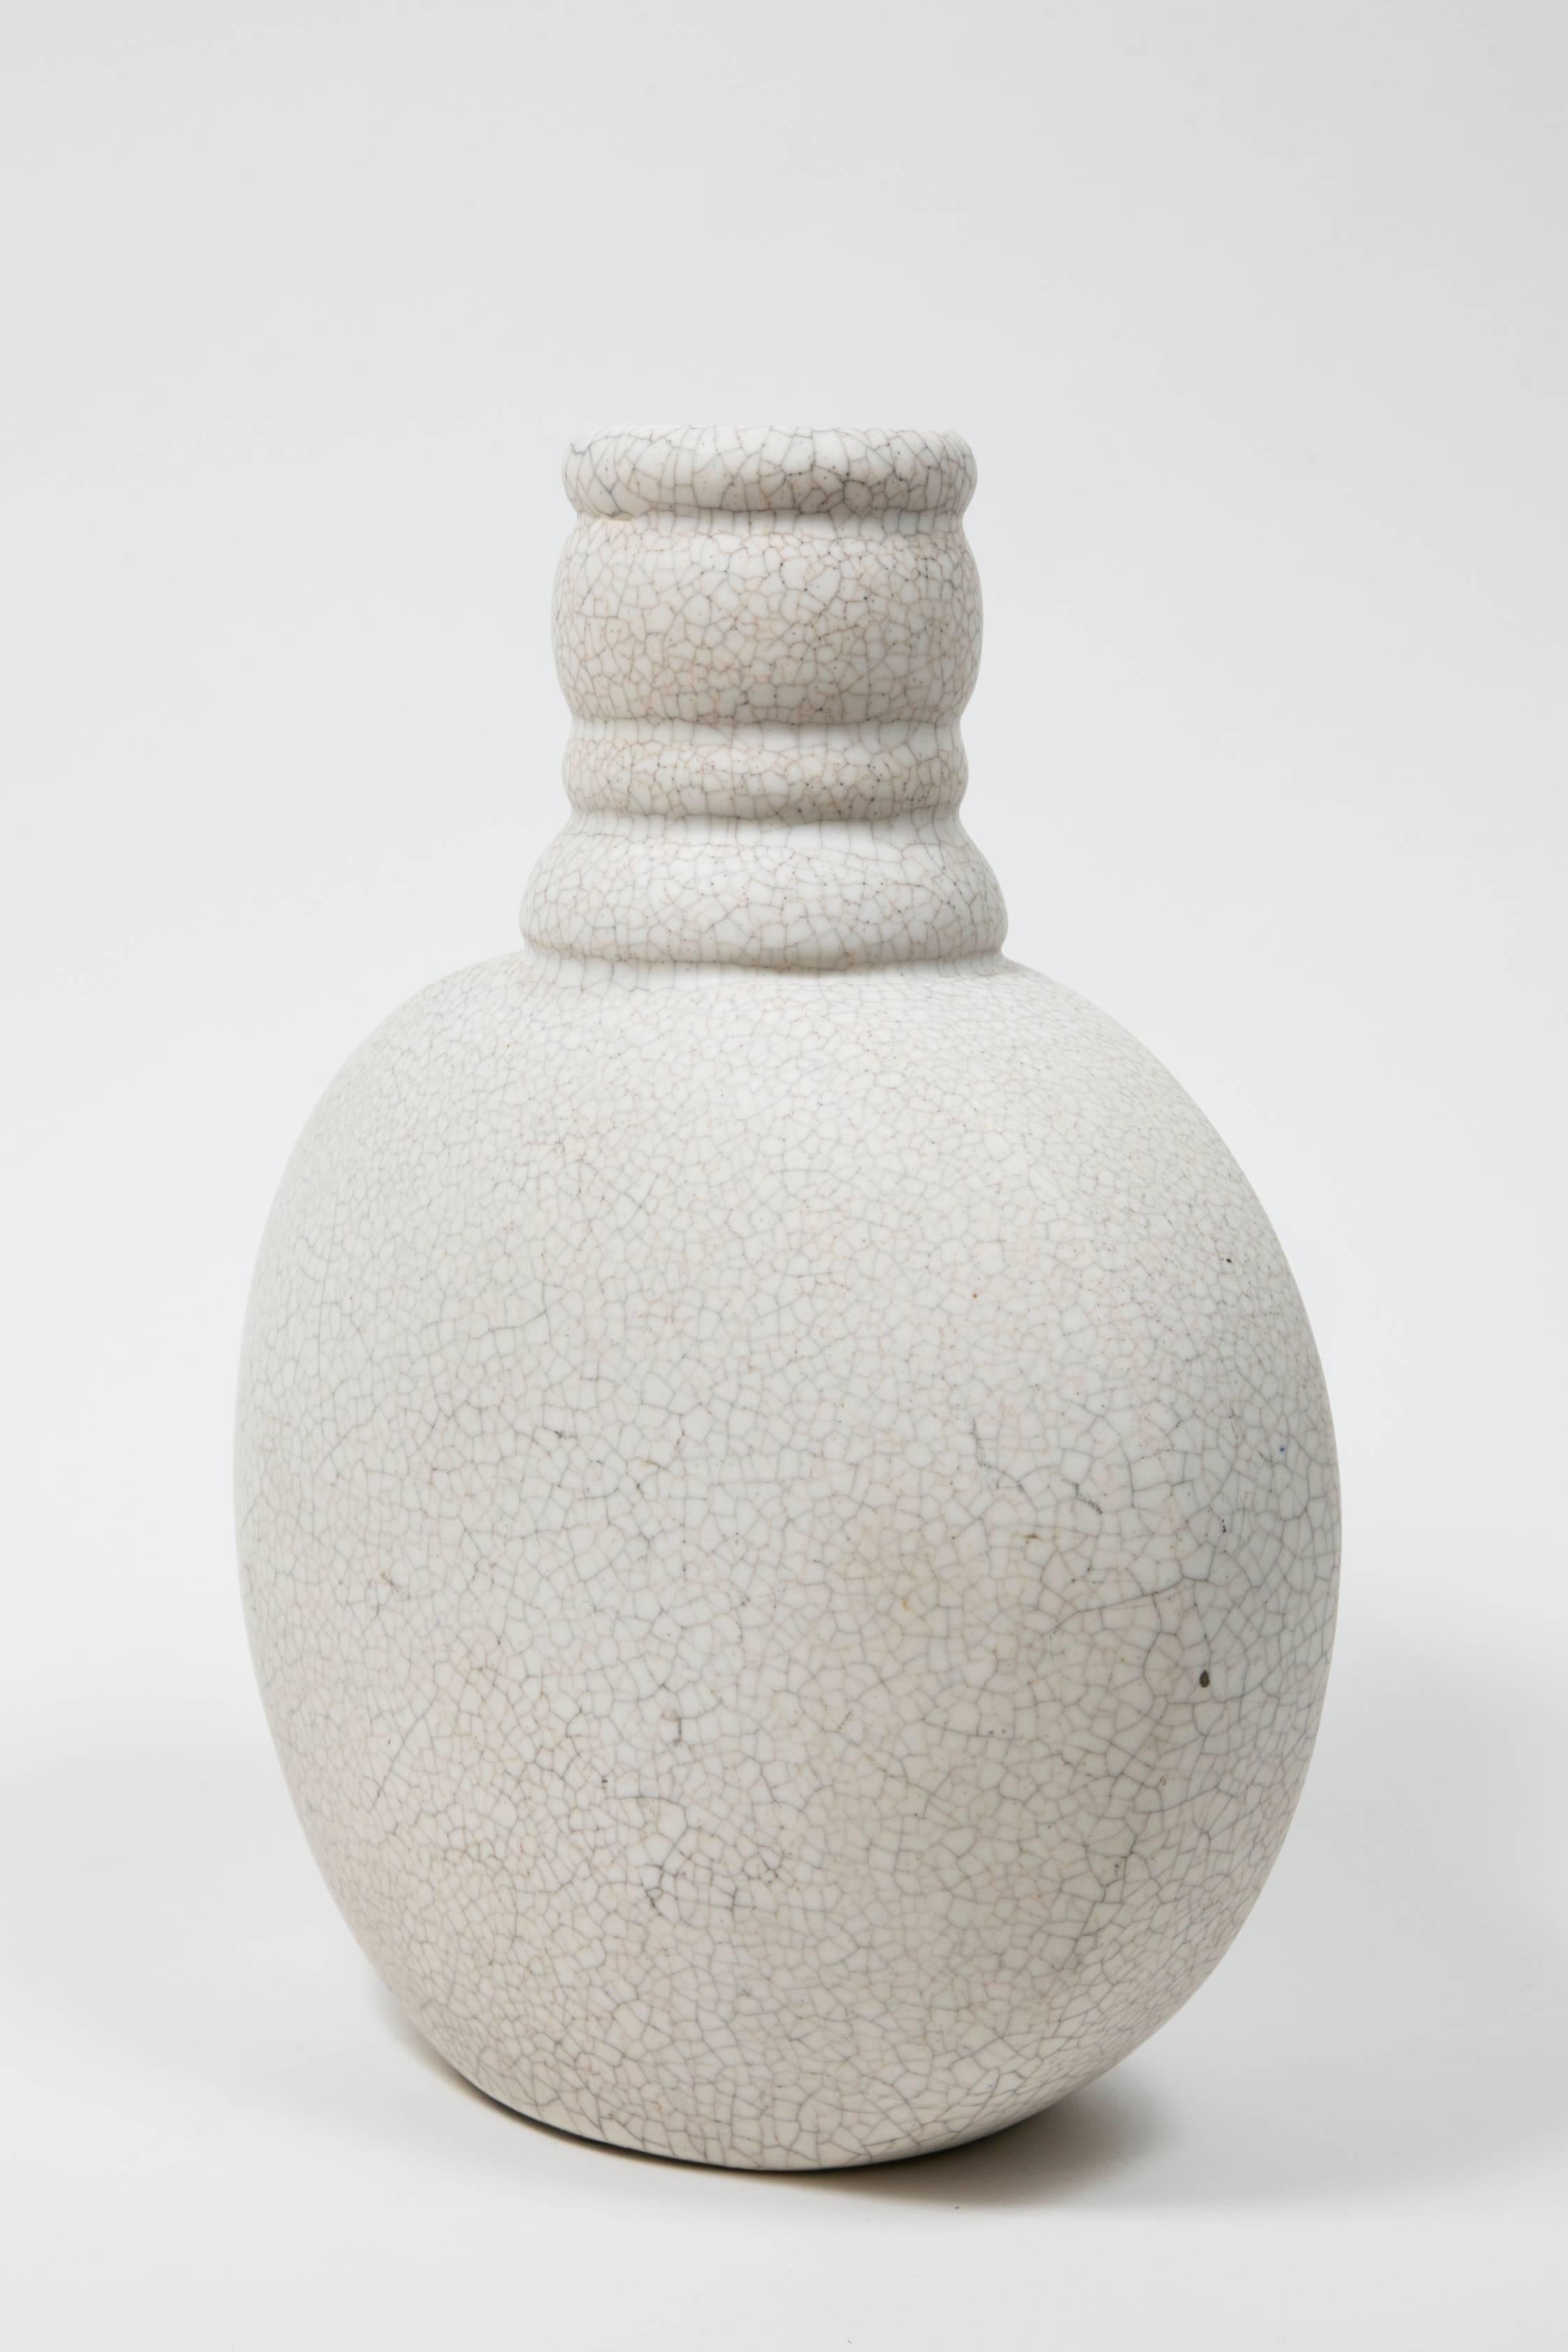 Französische weiße Craquelé-Vase von Charlotte Chauchet (1878-1964)
für  Atelier Primavera im Printemps 
Unterzeichnet: Primavera, Frankreich,
nummeriert.